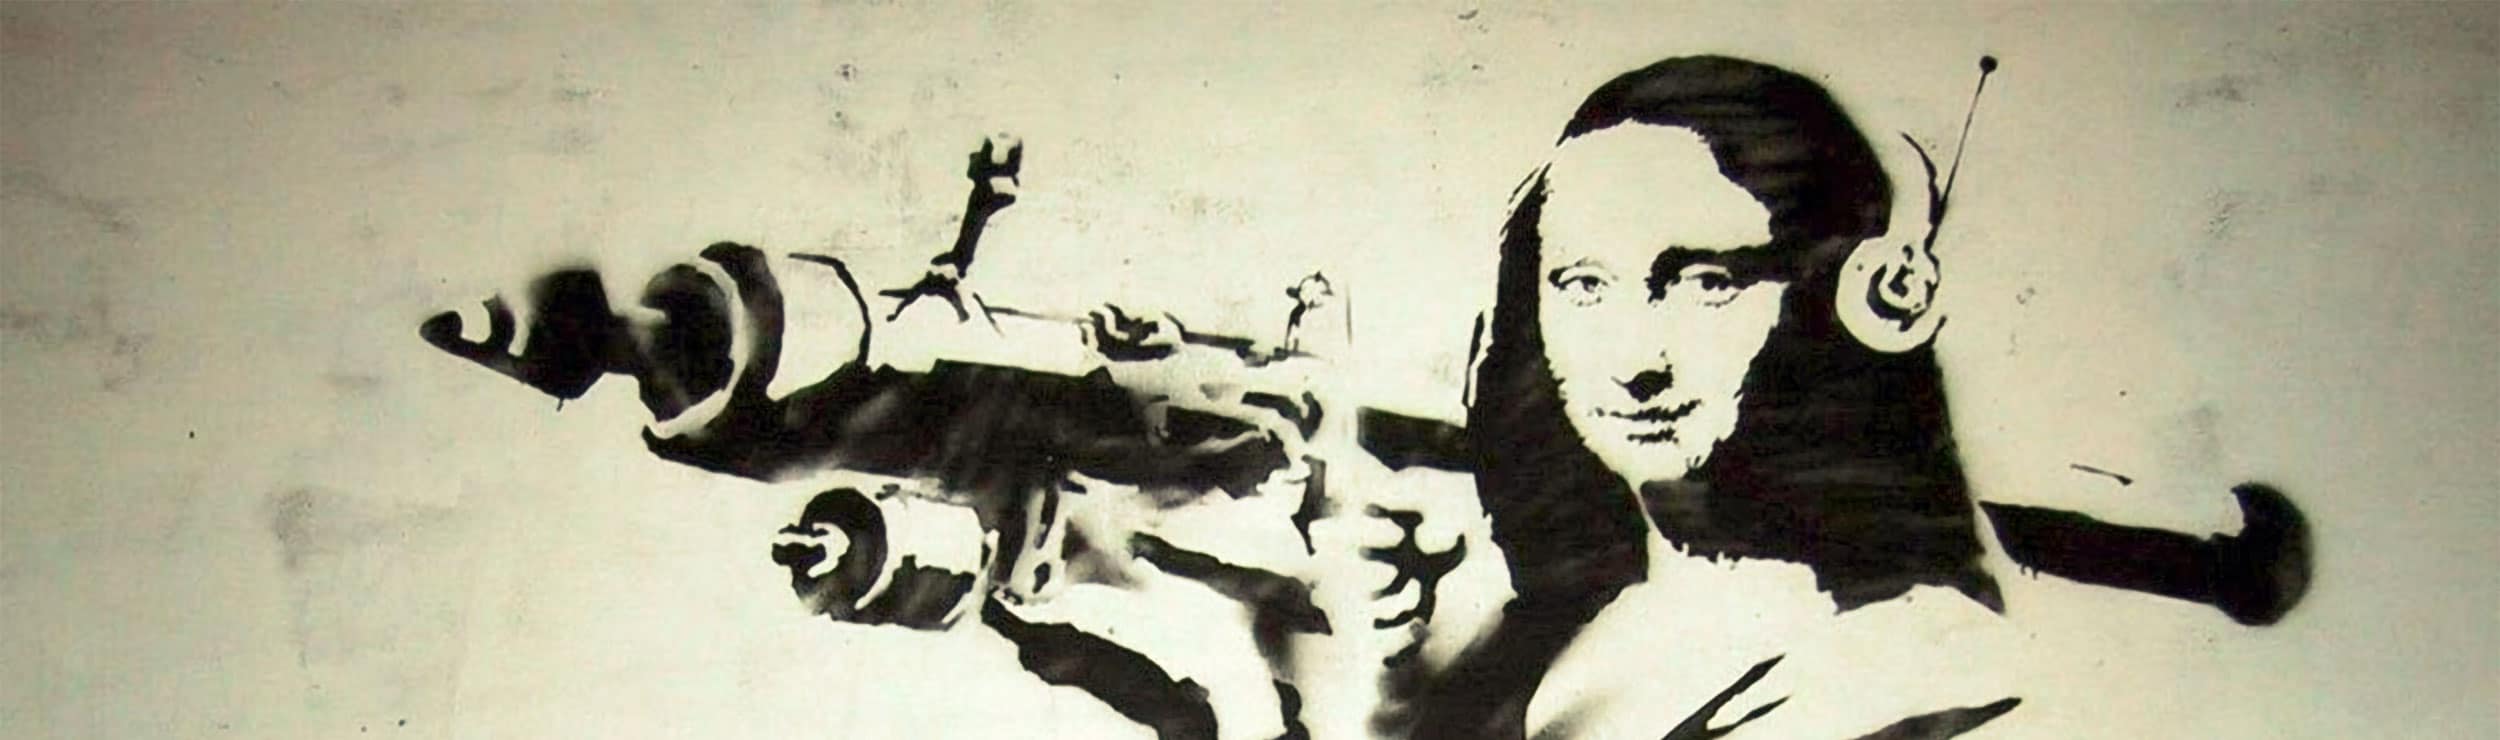 Mona Lisa Bazooka by Banksy